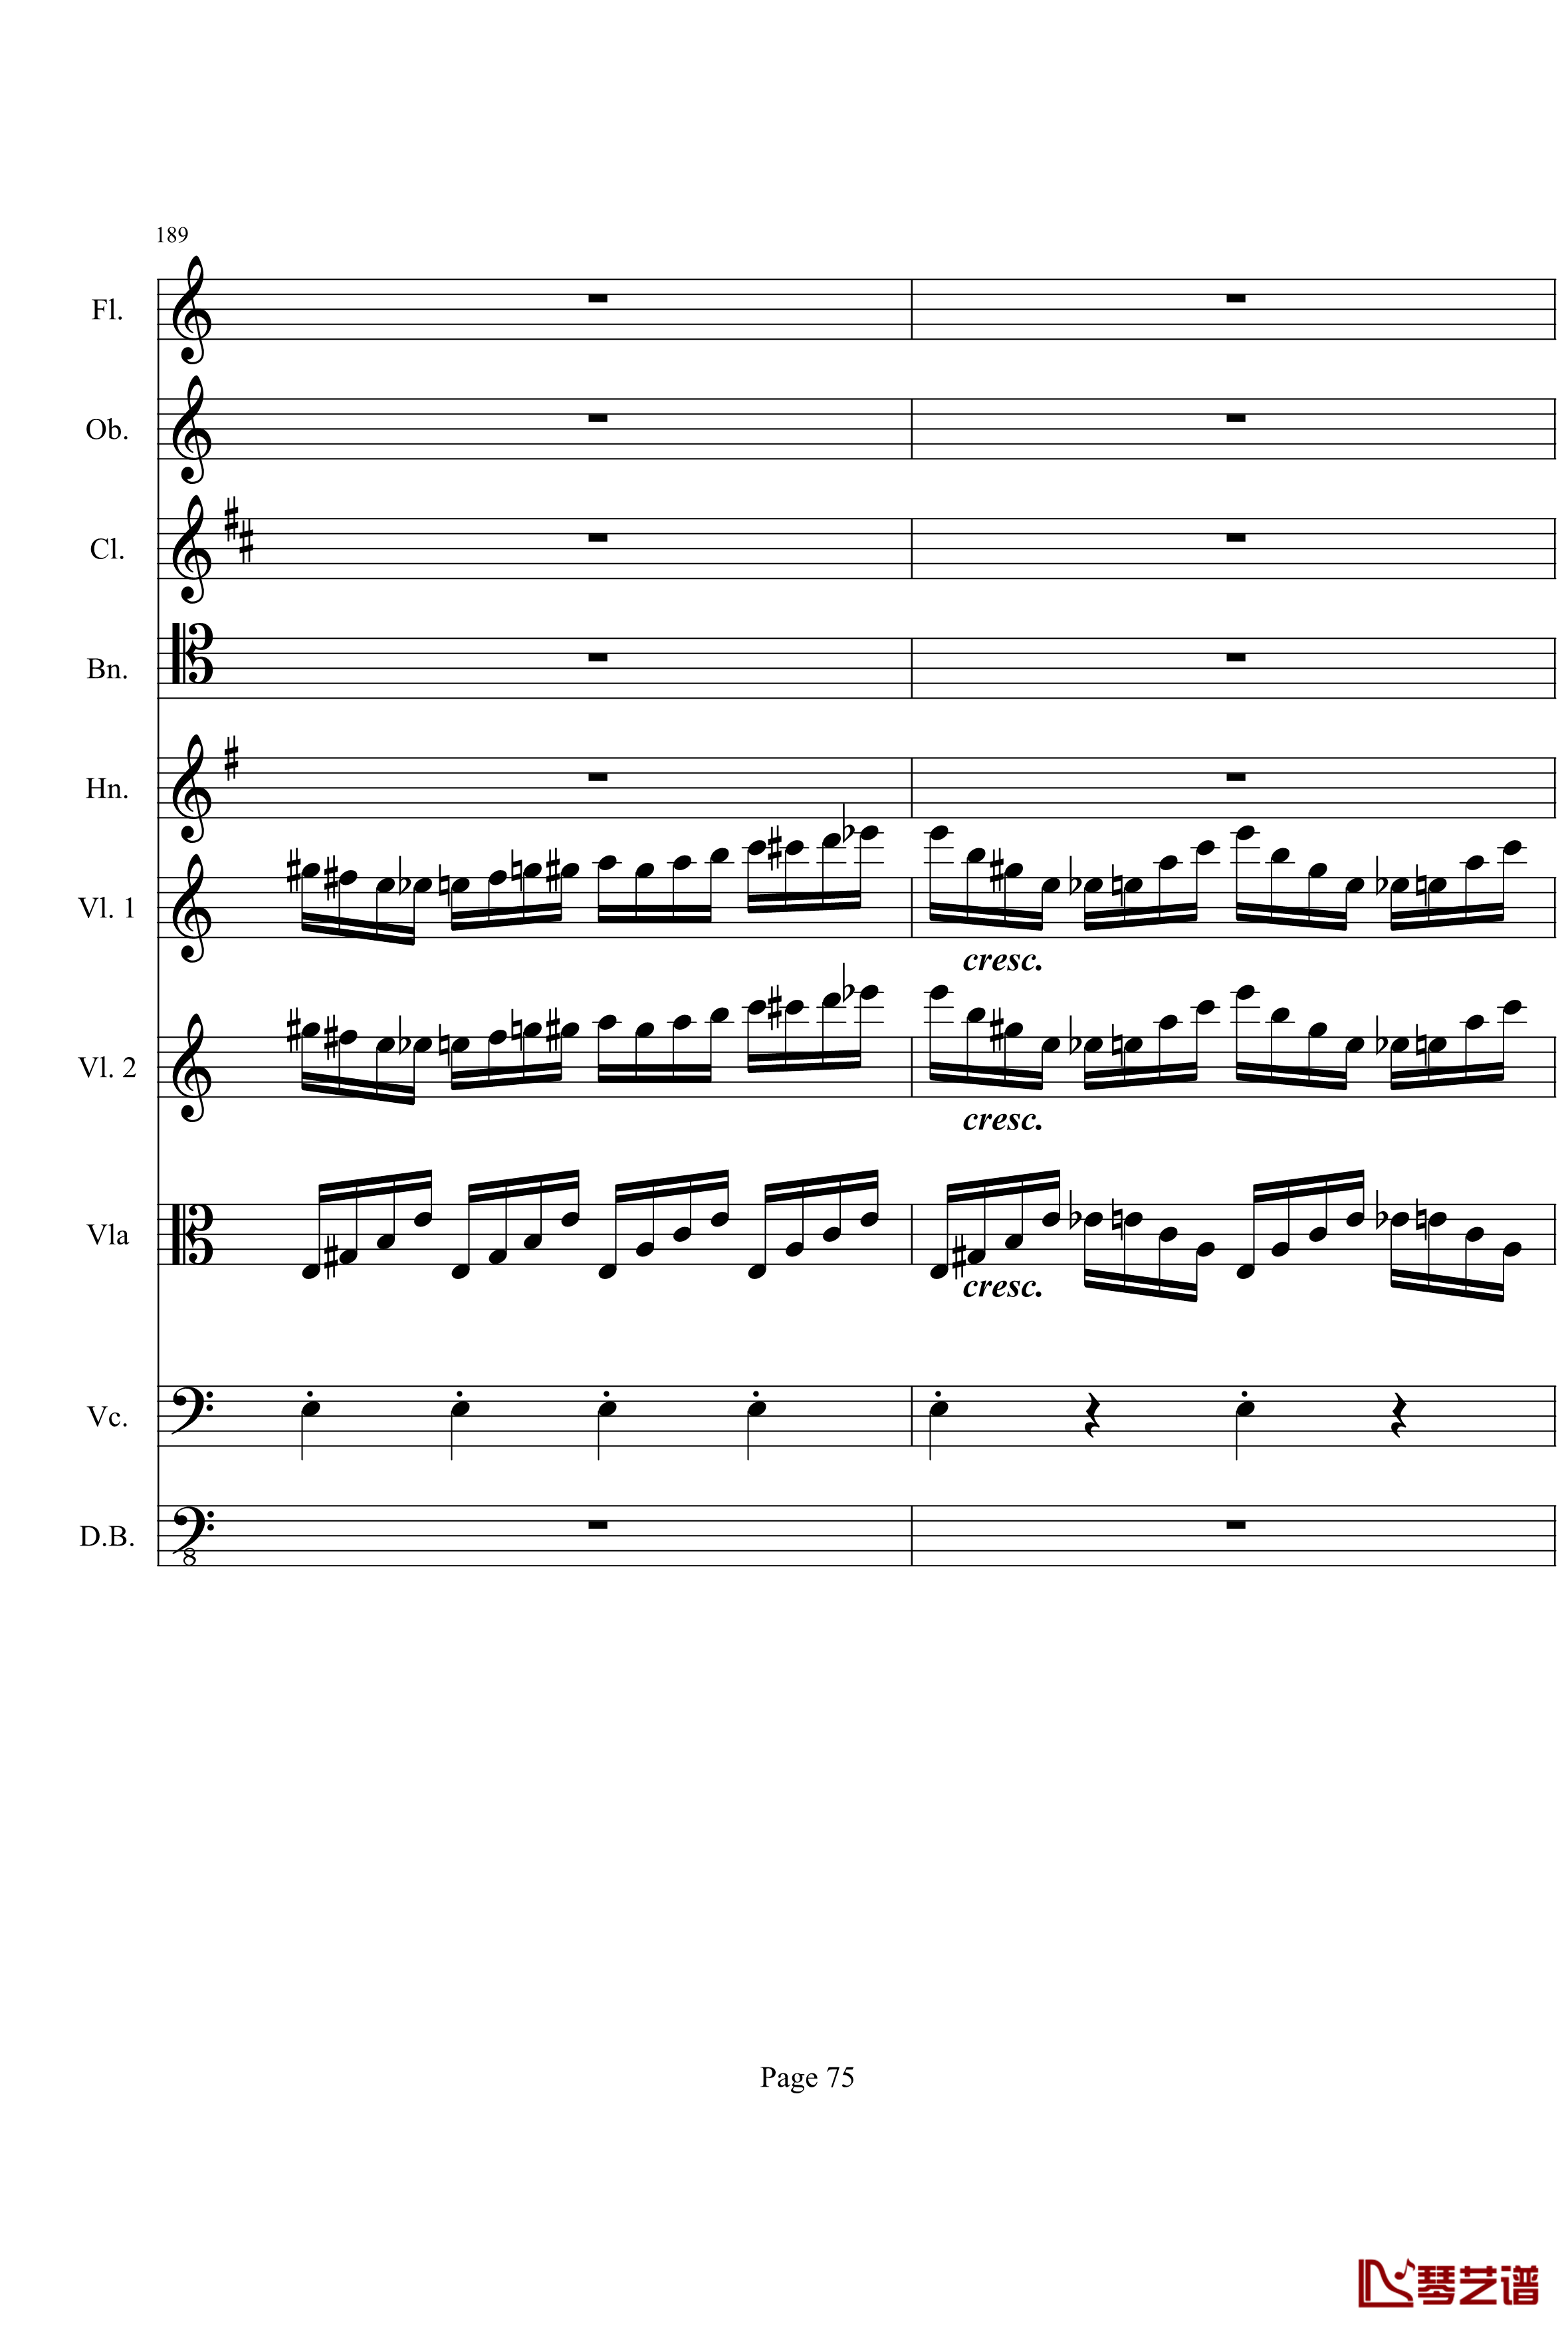 奏鸣曲之交响钢琴谱-第21首-Ⅰ-贝多芬-beethoven75